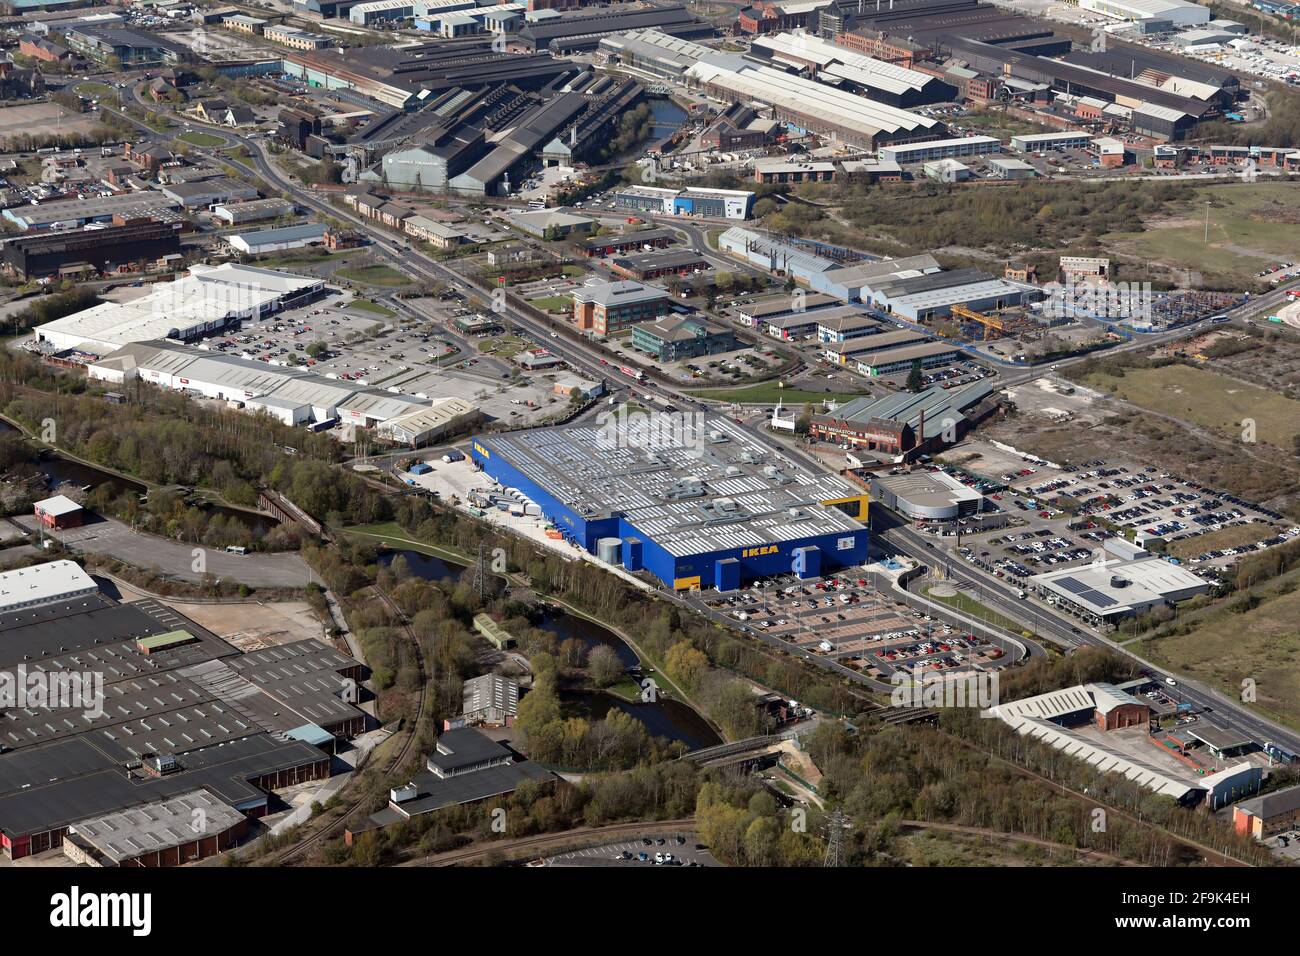 Vista aerea del negozio di mobili IKEA Sheffield, con i parchi commerciali e commerciali Meadowhall e la sede centrale della polizia del South Yorkshire sullo sfondo Foto Stock